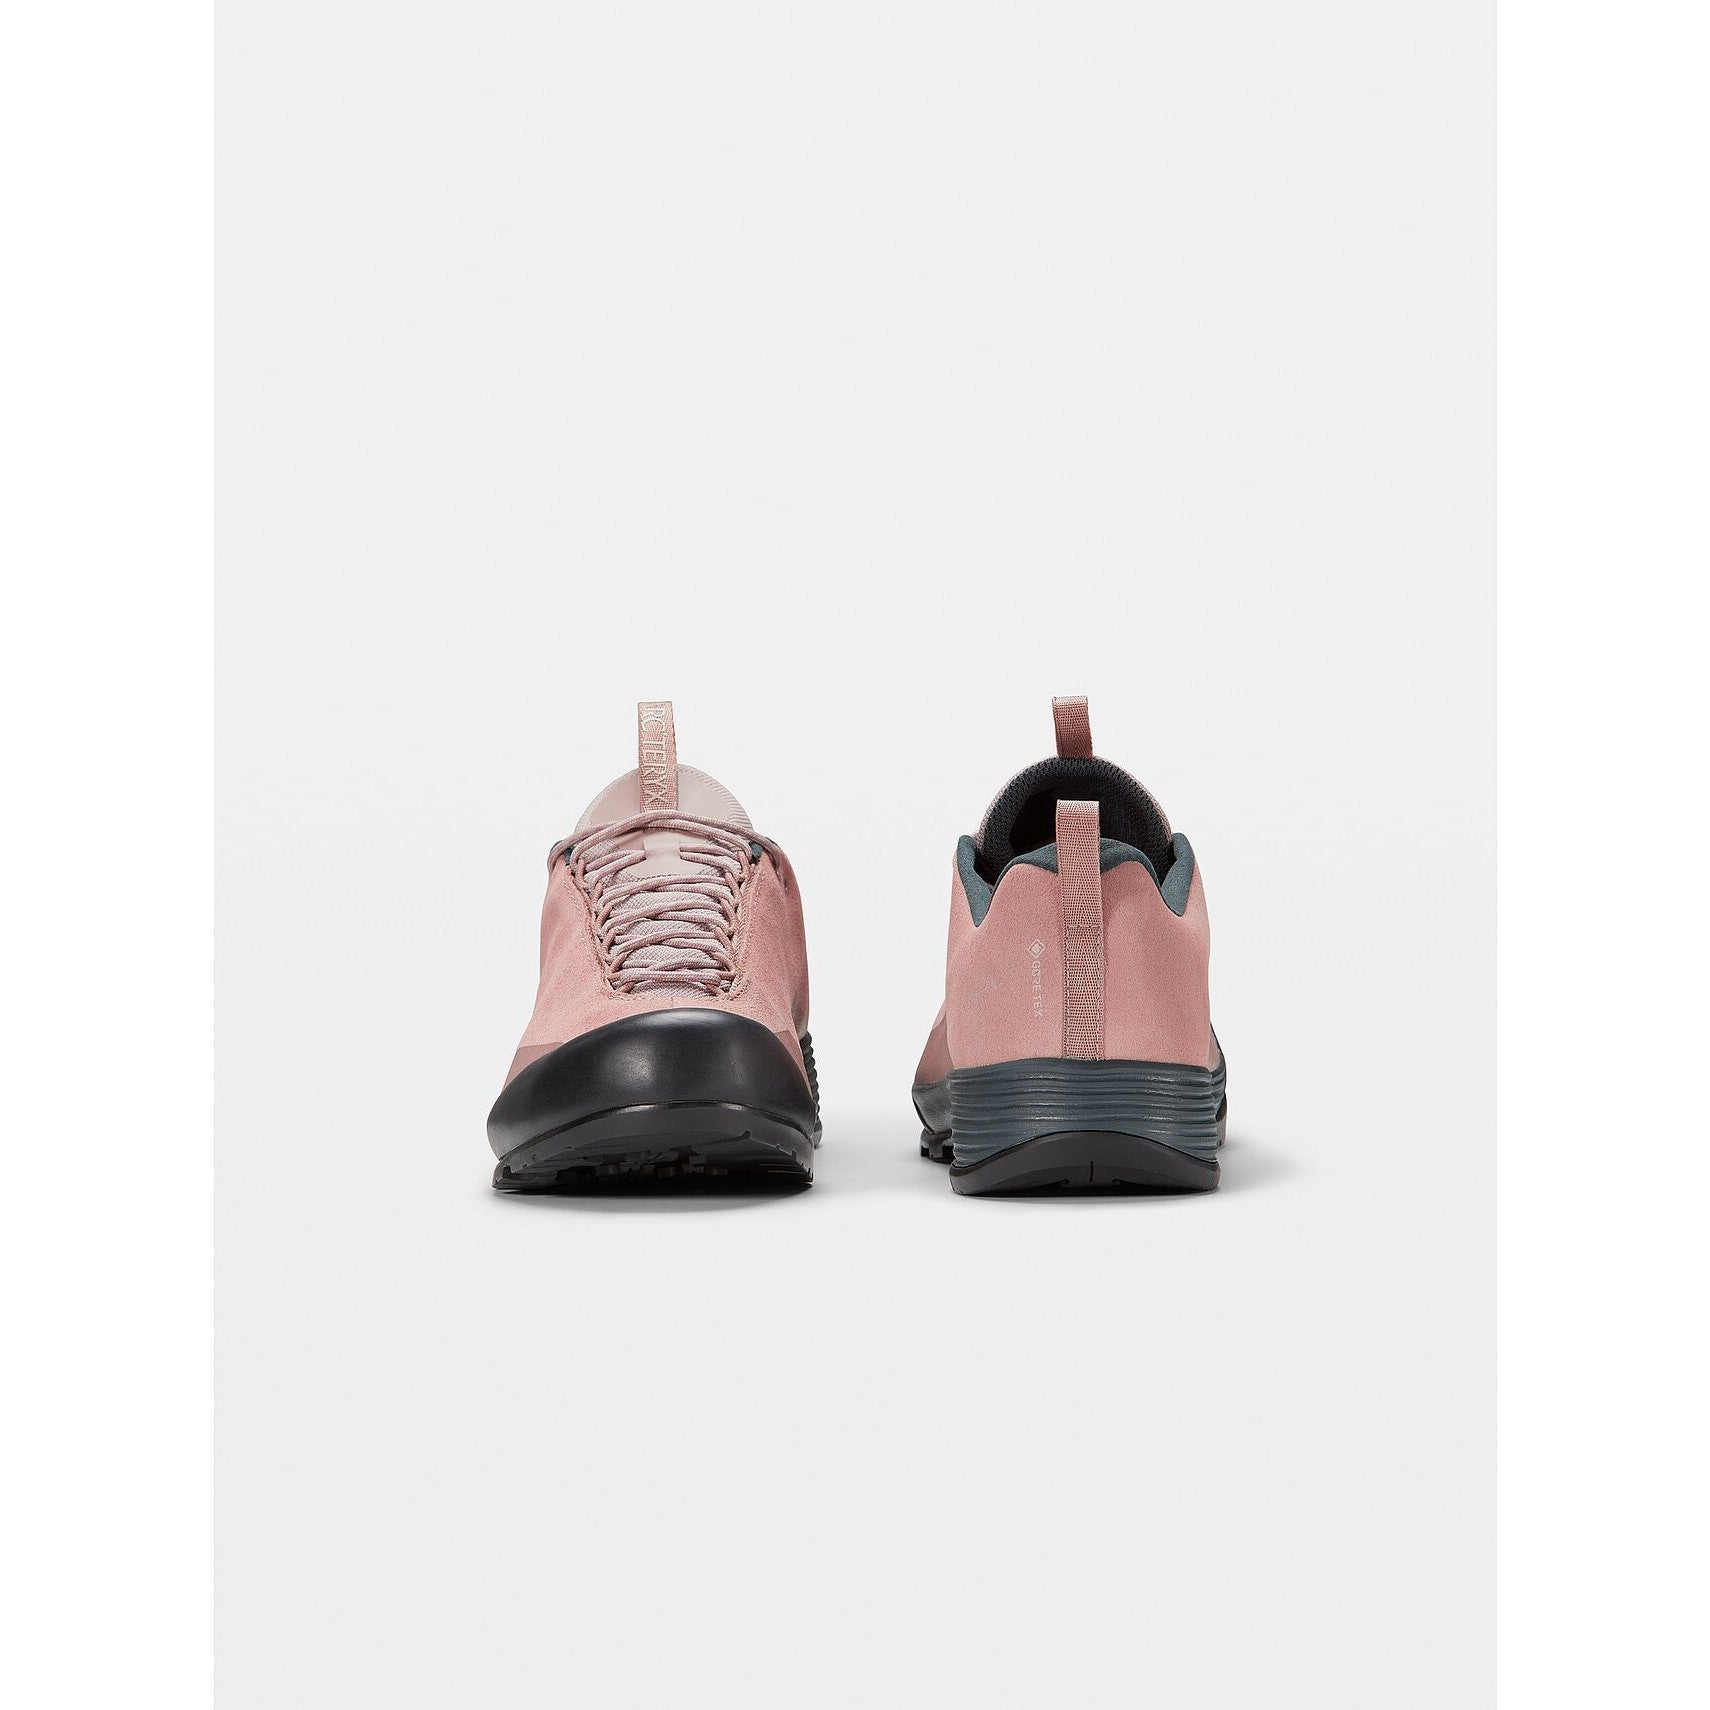 Konseal-FL-2-Leather-GTX-Shoe-Women-s-Dark-Verra-Glitch-Pair-S22.jpg